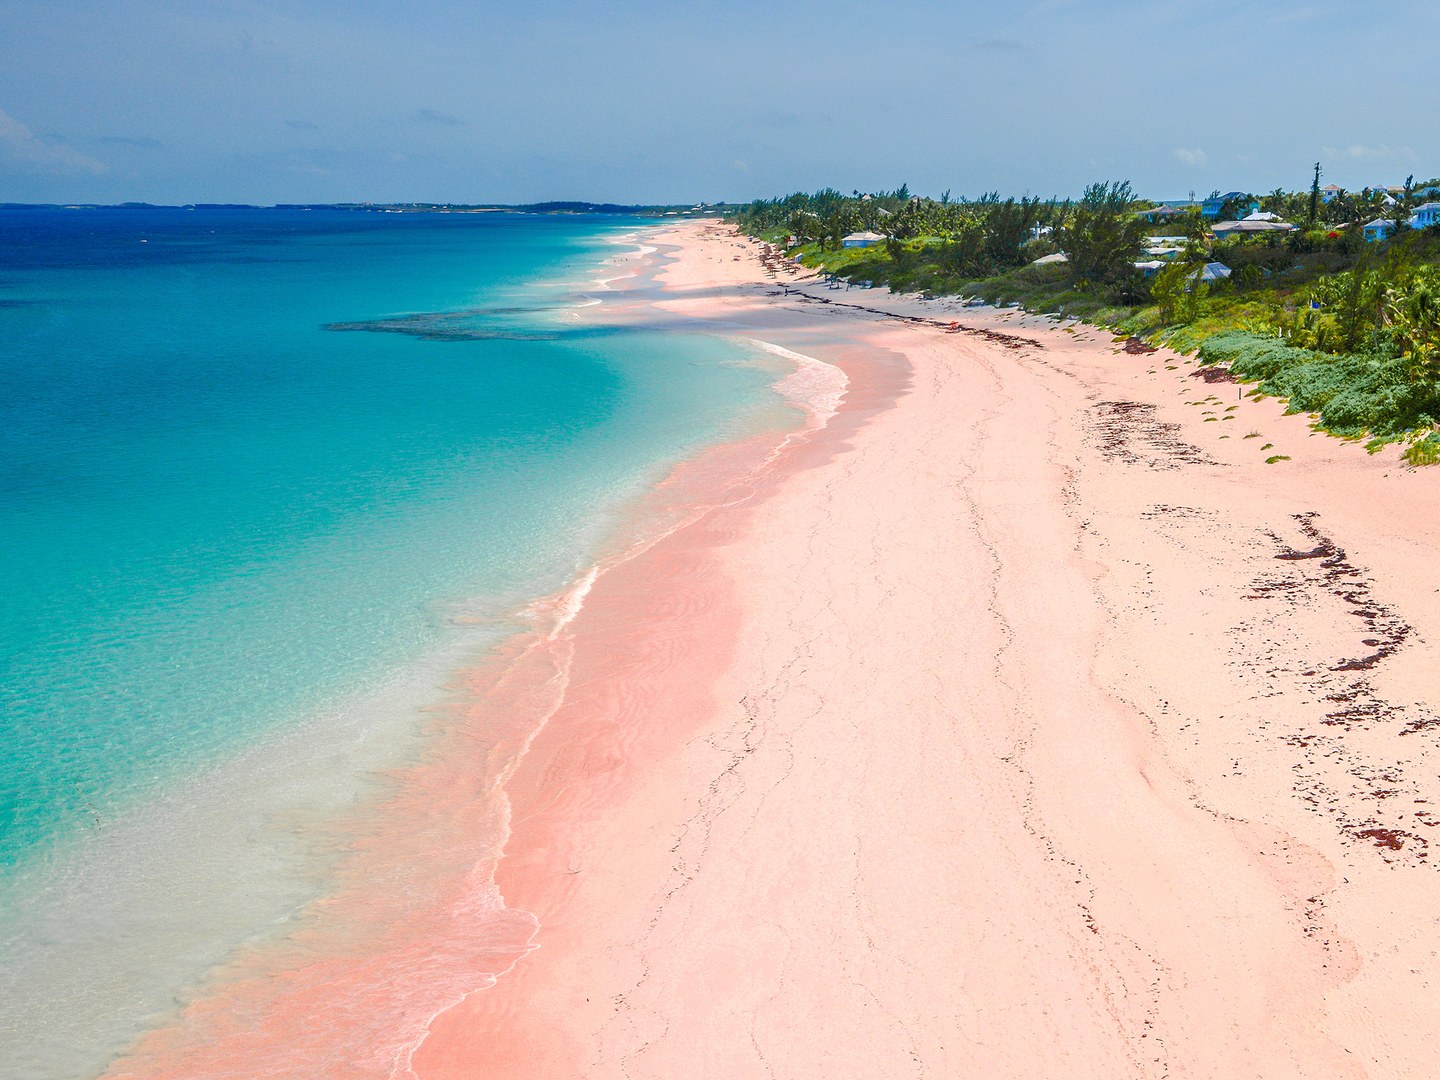 當你放眼望去巴哈馬的 Harbour Island 時，一整片都是粉紅色的沙灘，湛藍的海水加上粉紅色的沙，令Harbour Island變成夢幻天堂，難怪會有「世界上最性感海灘」的美譽。由於有孔蟲的外殻令Harbour Island 的沙都變成了玫瑰粉紅色，十分浪漫。